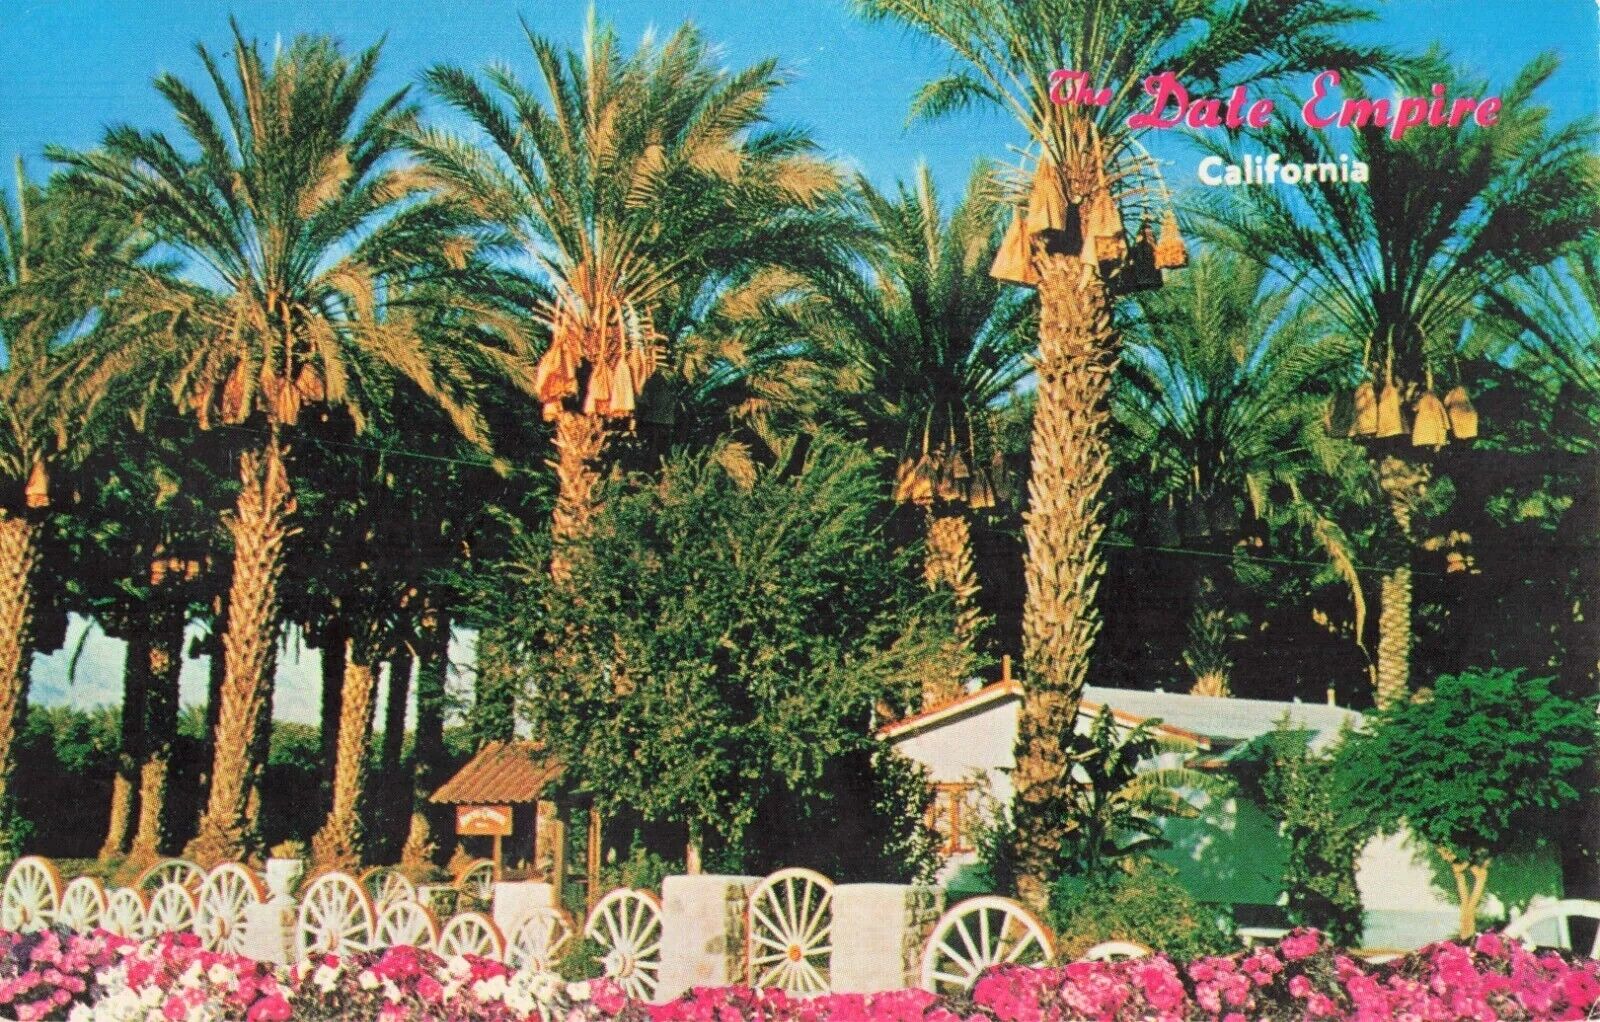 Date Empire, Coachella Valley Date Grove - Indio California CA, PM 1972 Postcard